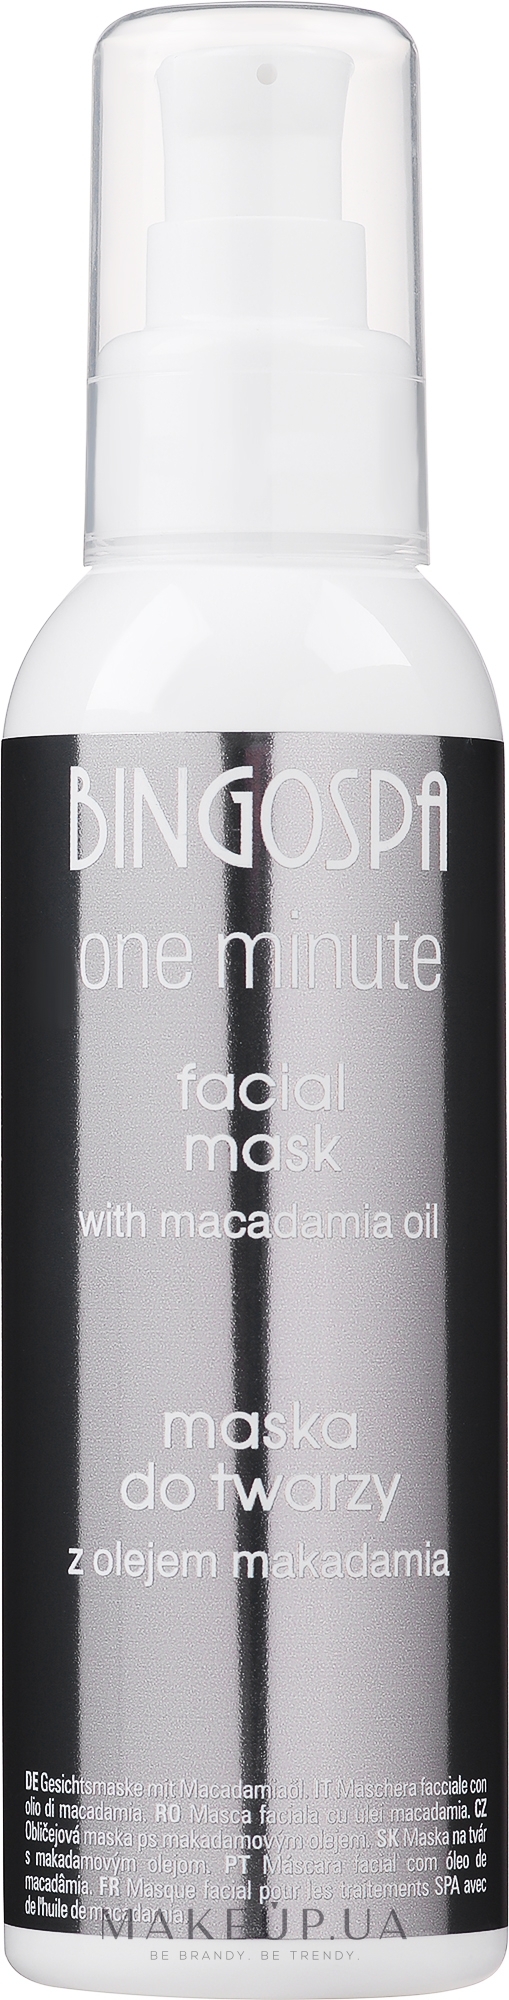 Маска для лица из 100% масла макадамии - BingoSpa Face Mask — фото 150g